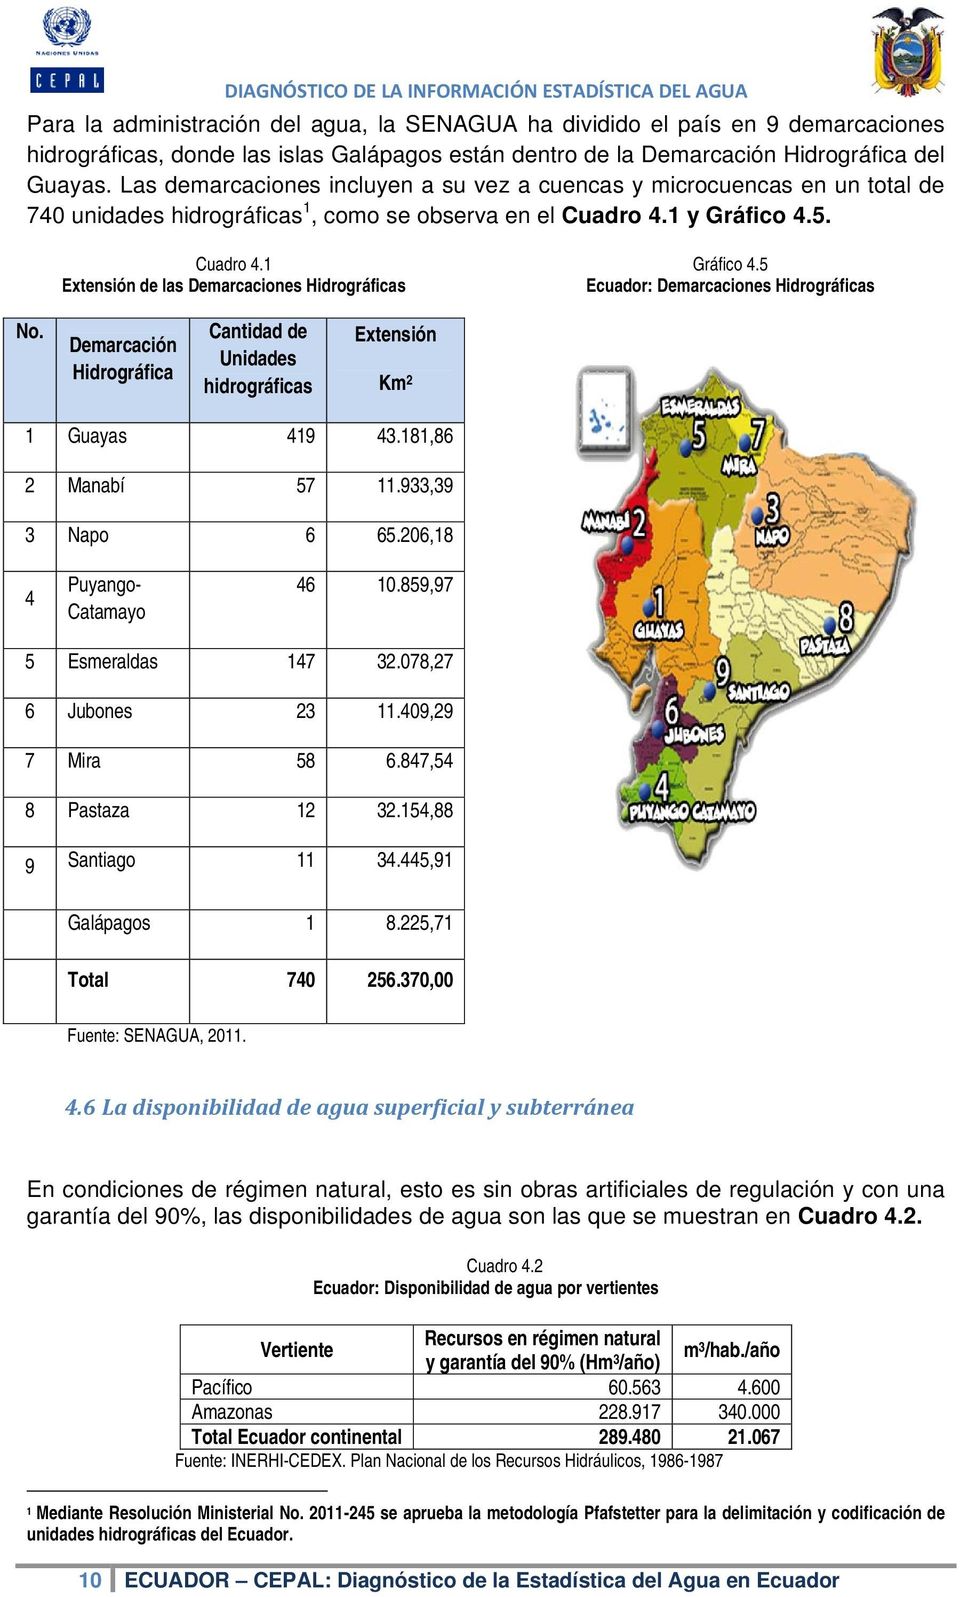 5 Ecuador: Demarcaciones Hidrográficas No. Demarcación Hidrográfica Cantidad de Unidades hidrográficas Extensión Km 2 1 Guayas 419 43.181,86 2 Manabí 57 11.933,39 3 Napo 6 65.